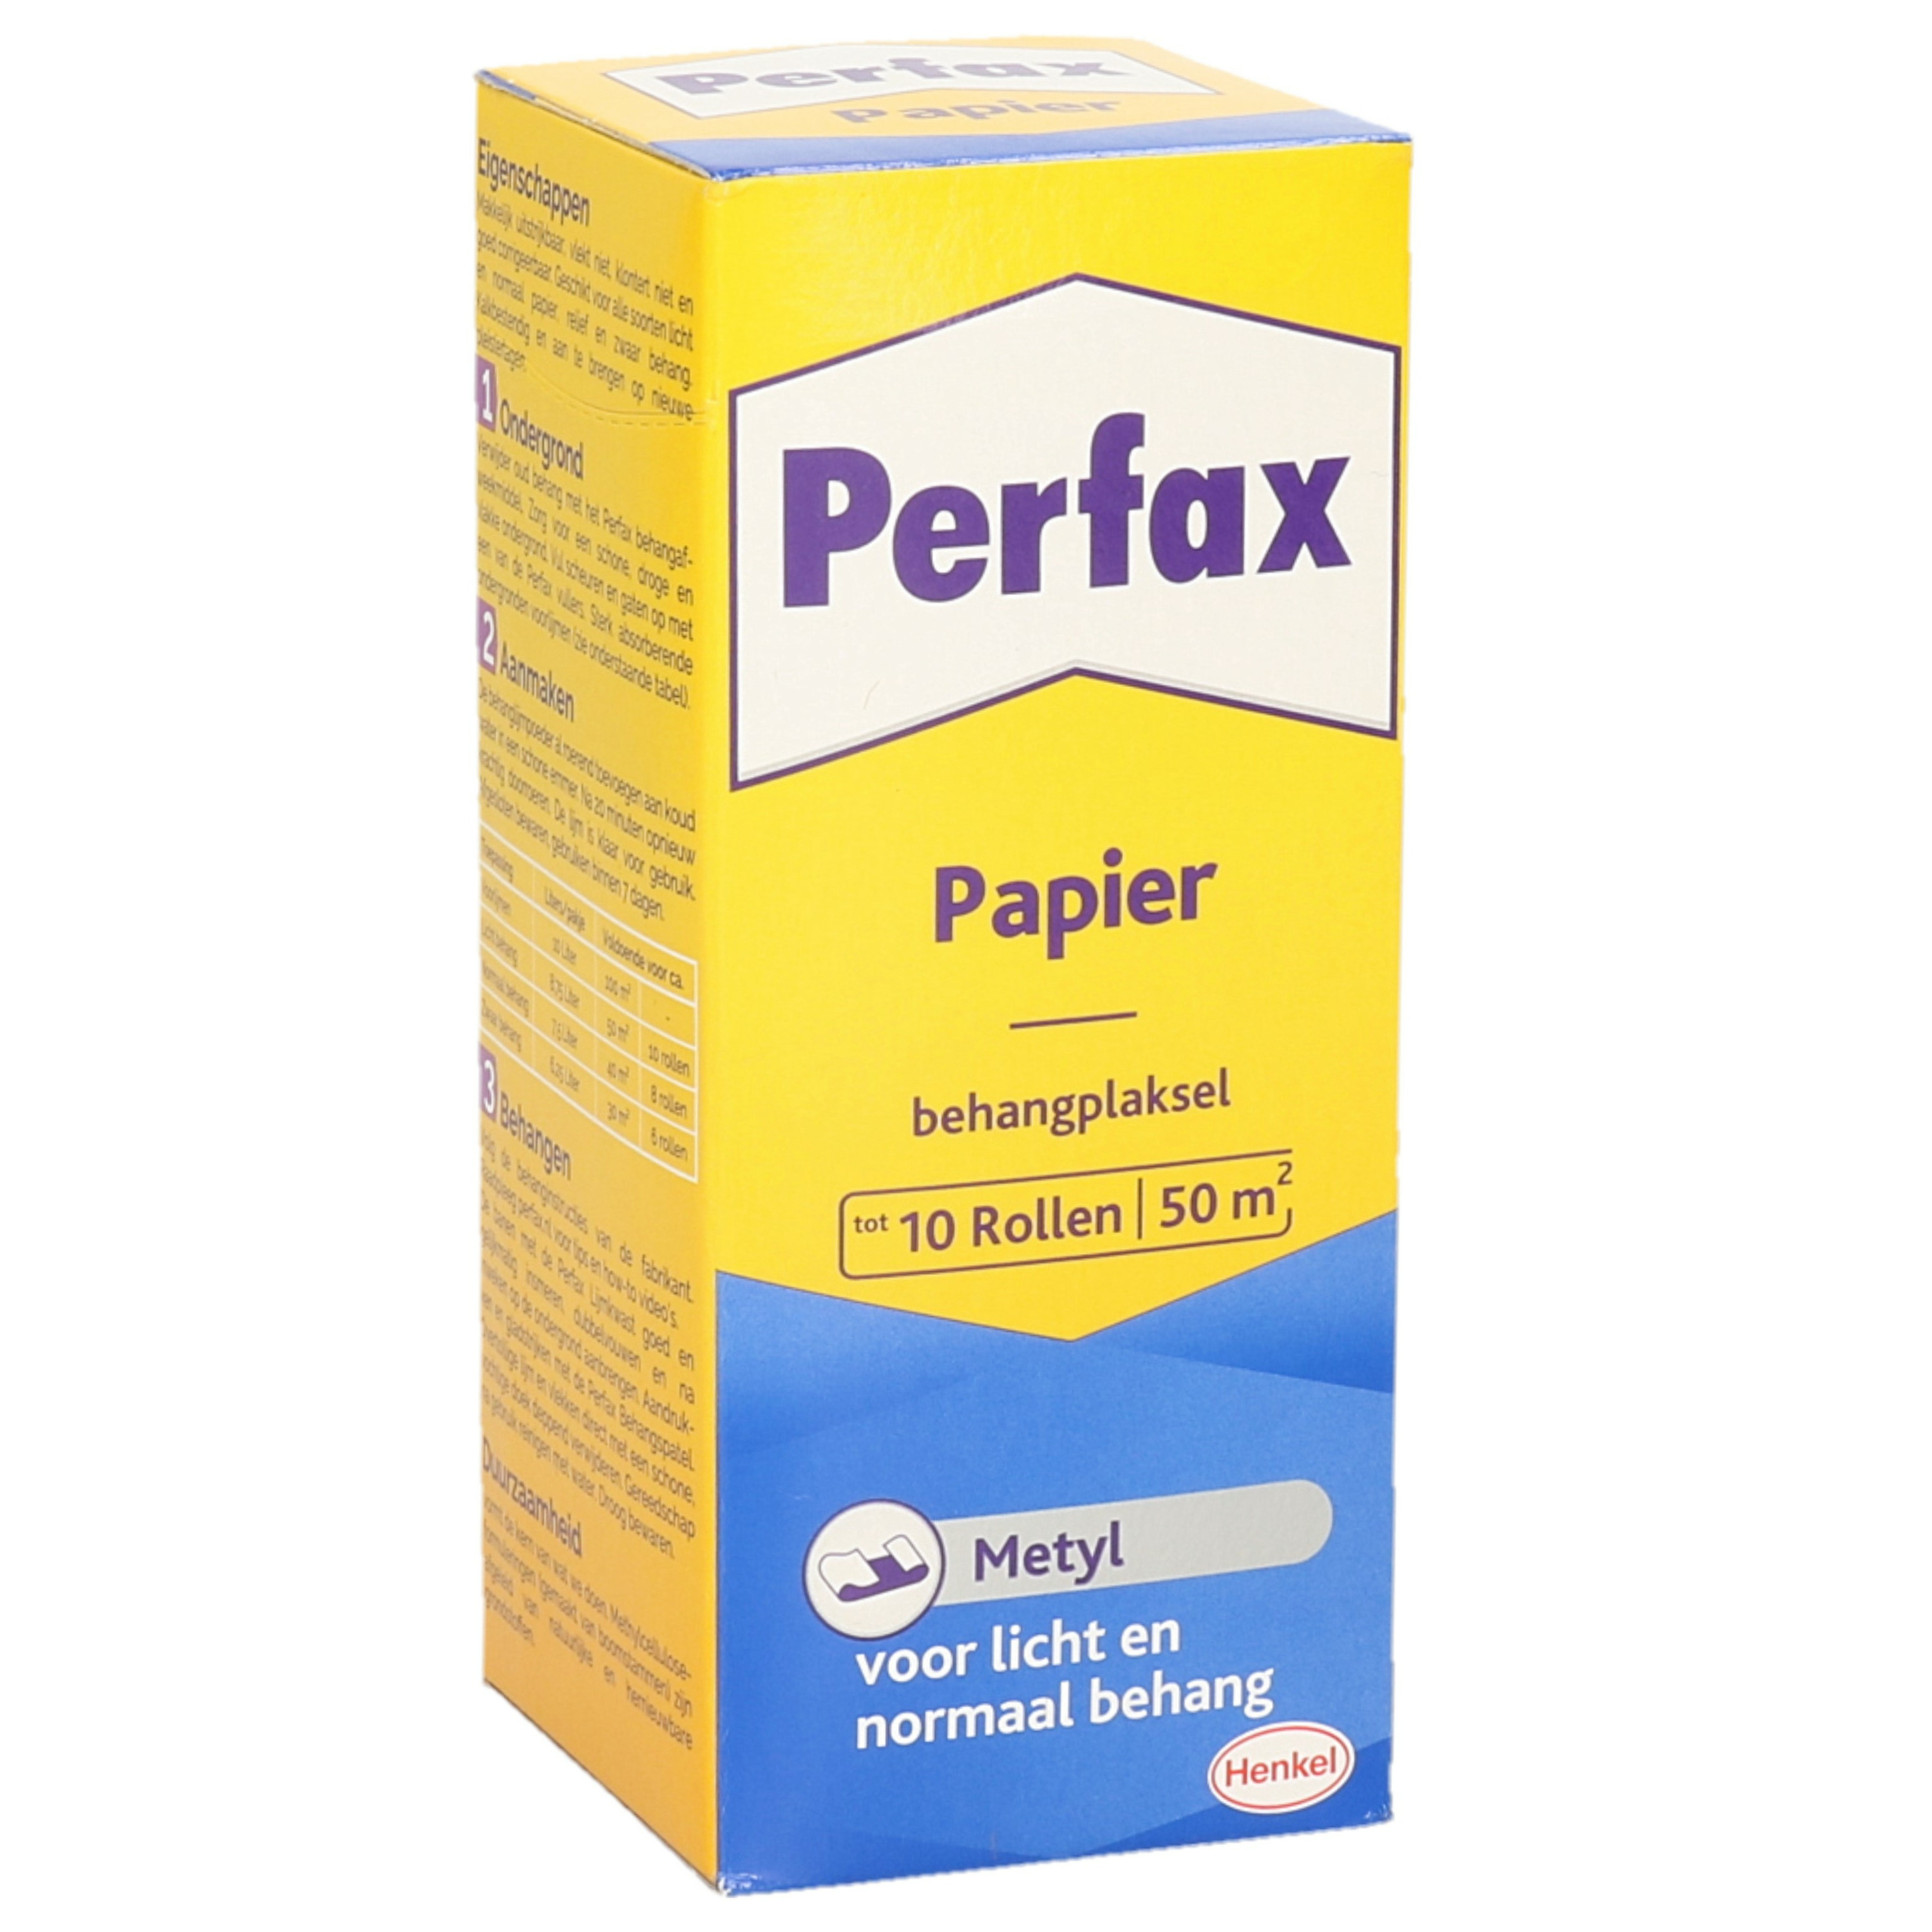 Perfax metyl behanglijm-behangplaksel 125 gram